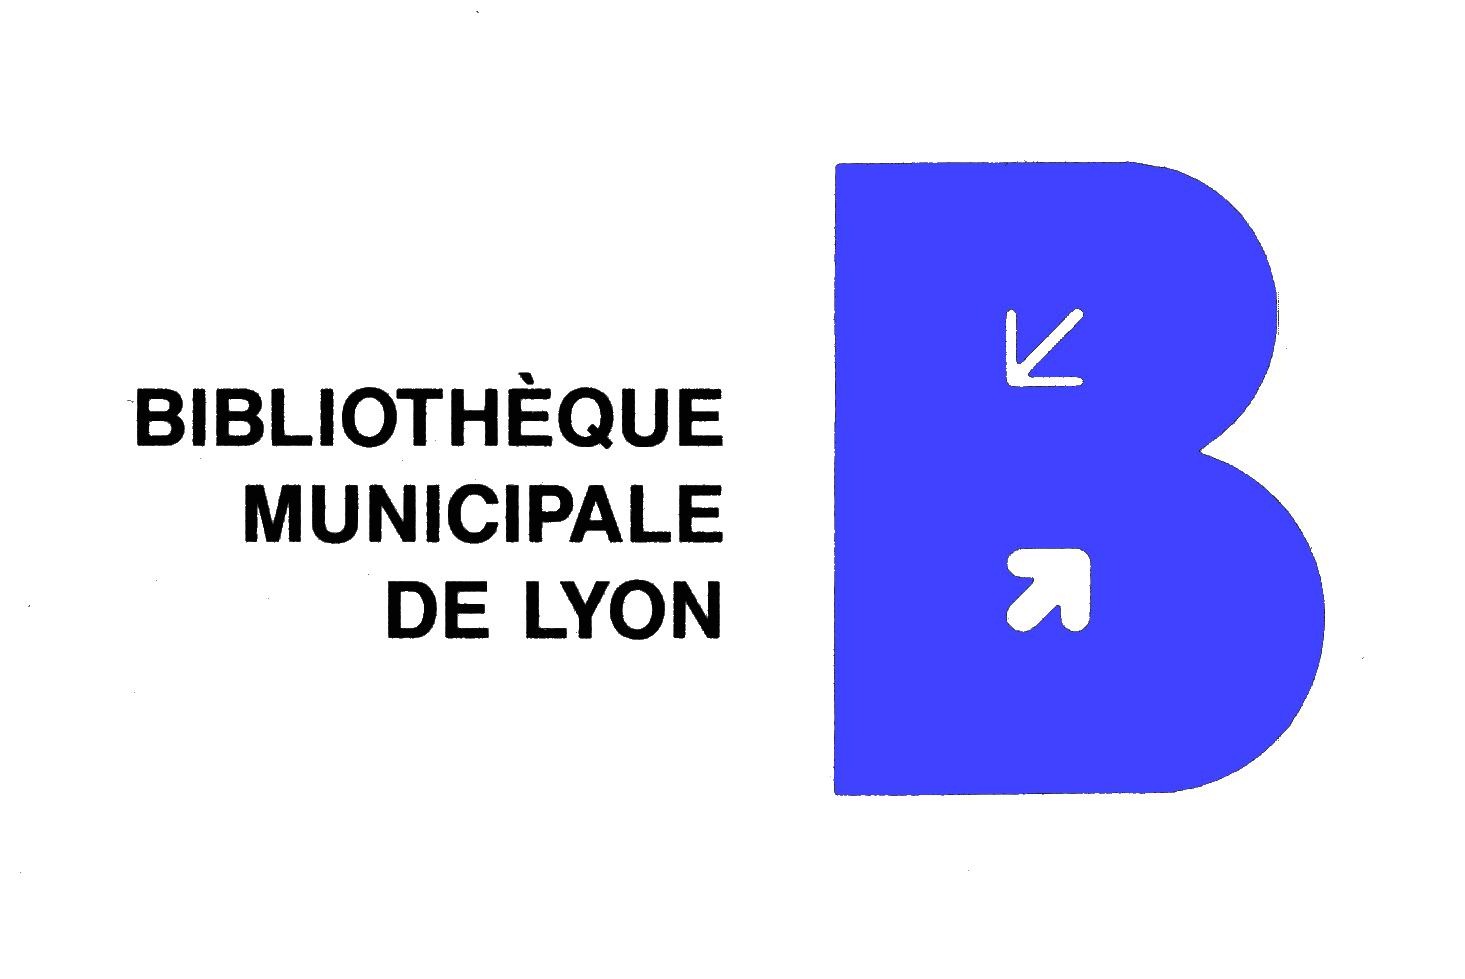 Bibliothèque Municipale de Lyon